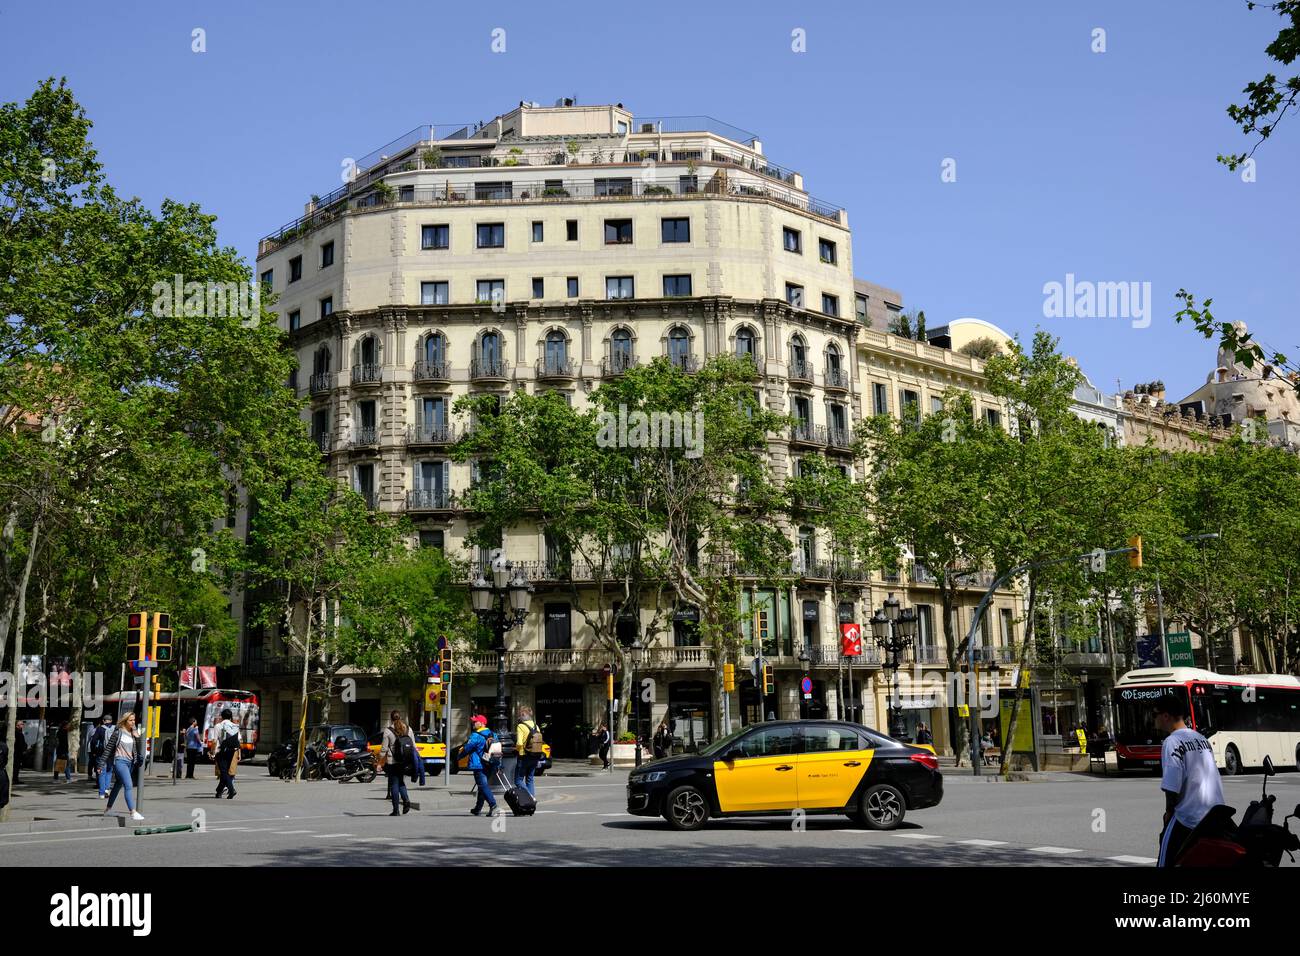 Street scene near Obelisk Square in Barcelona, Spain Stock Photo